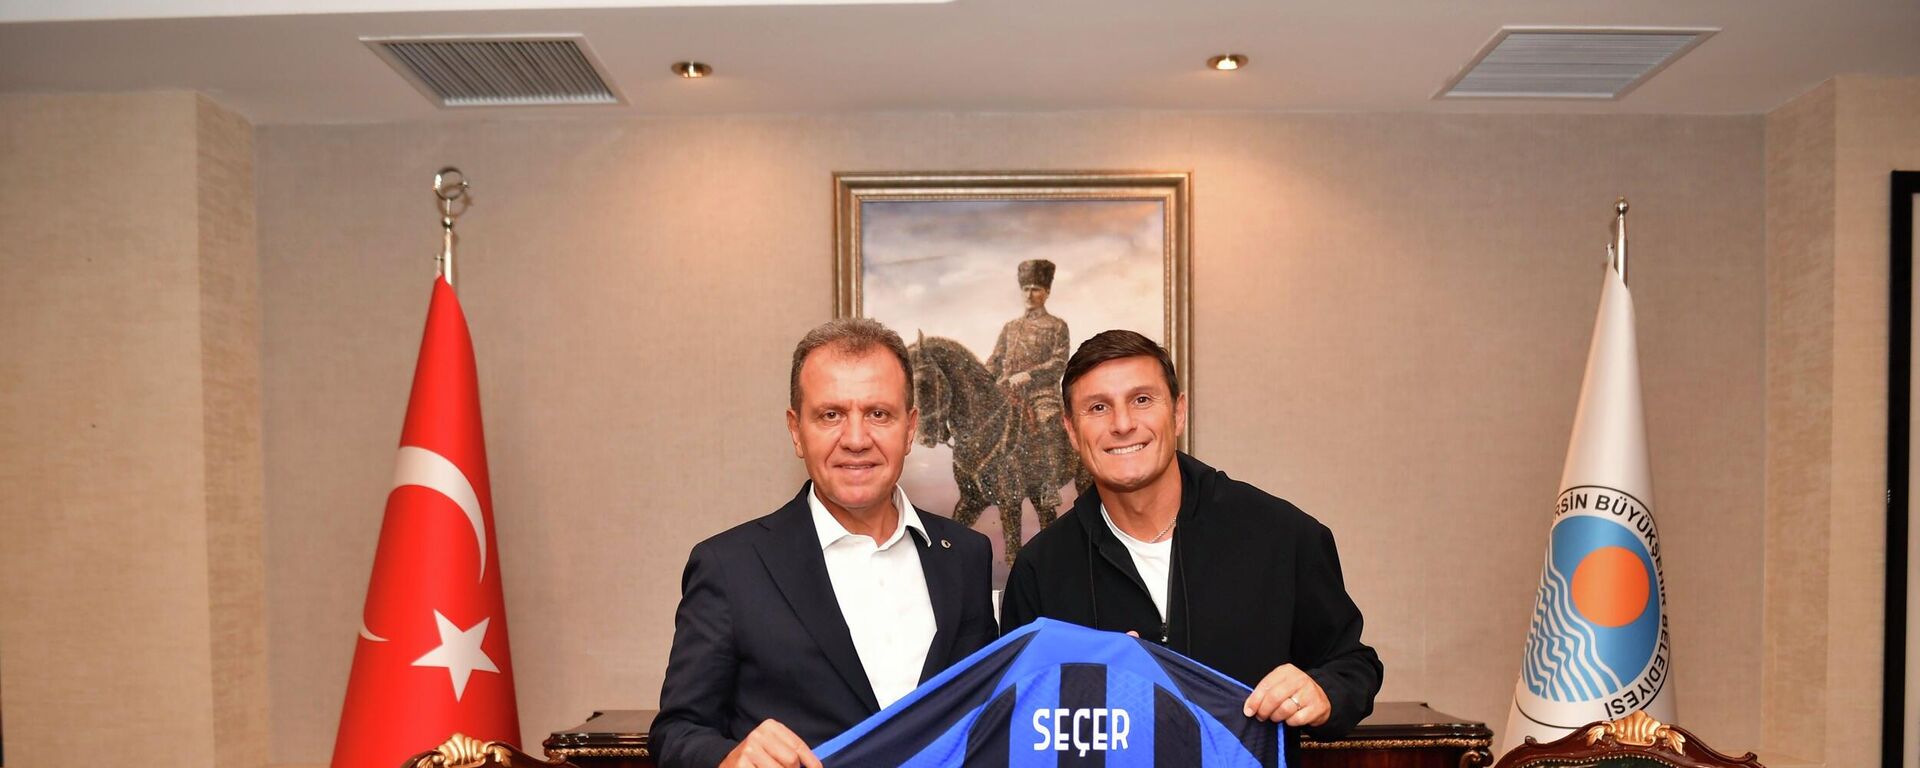 İtalyan ekiplerden Inter'in eski oyuncusu ve şu anki Başkan Yardımcısı Javier Zanetti, bir dizi etkinlik için geldiği Mersin'de, Büyükşehir Belediye Başkanı Vahap Seçer için '33' numaralı formayı imzalayarak hediye etti. - Sputnik Türkiye, 1920, 19.09.2022